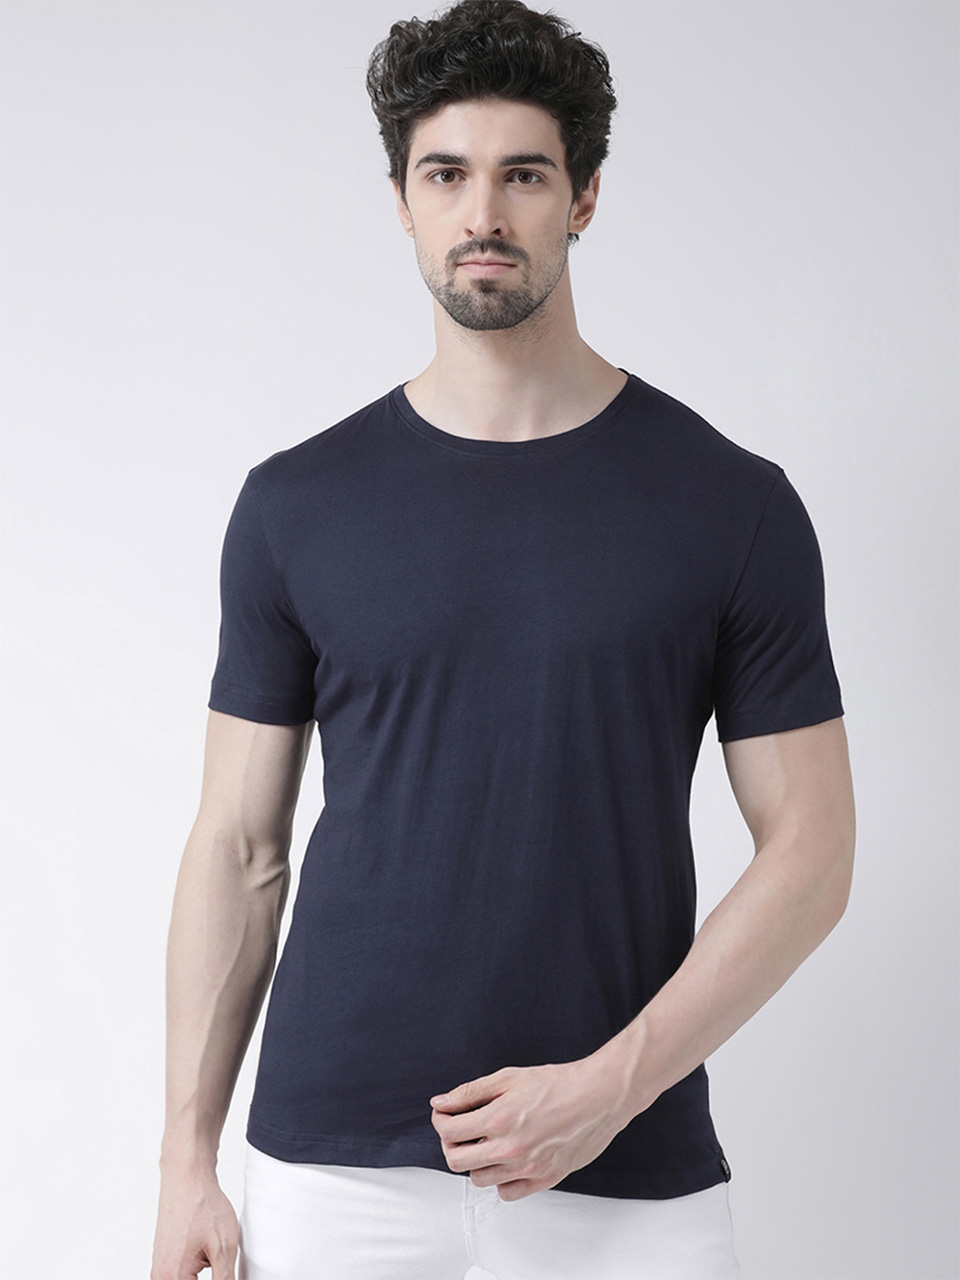 Kaspy Solid Cotton Half Sleeve T-shirts - Kaspy